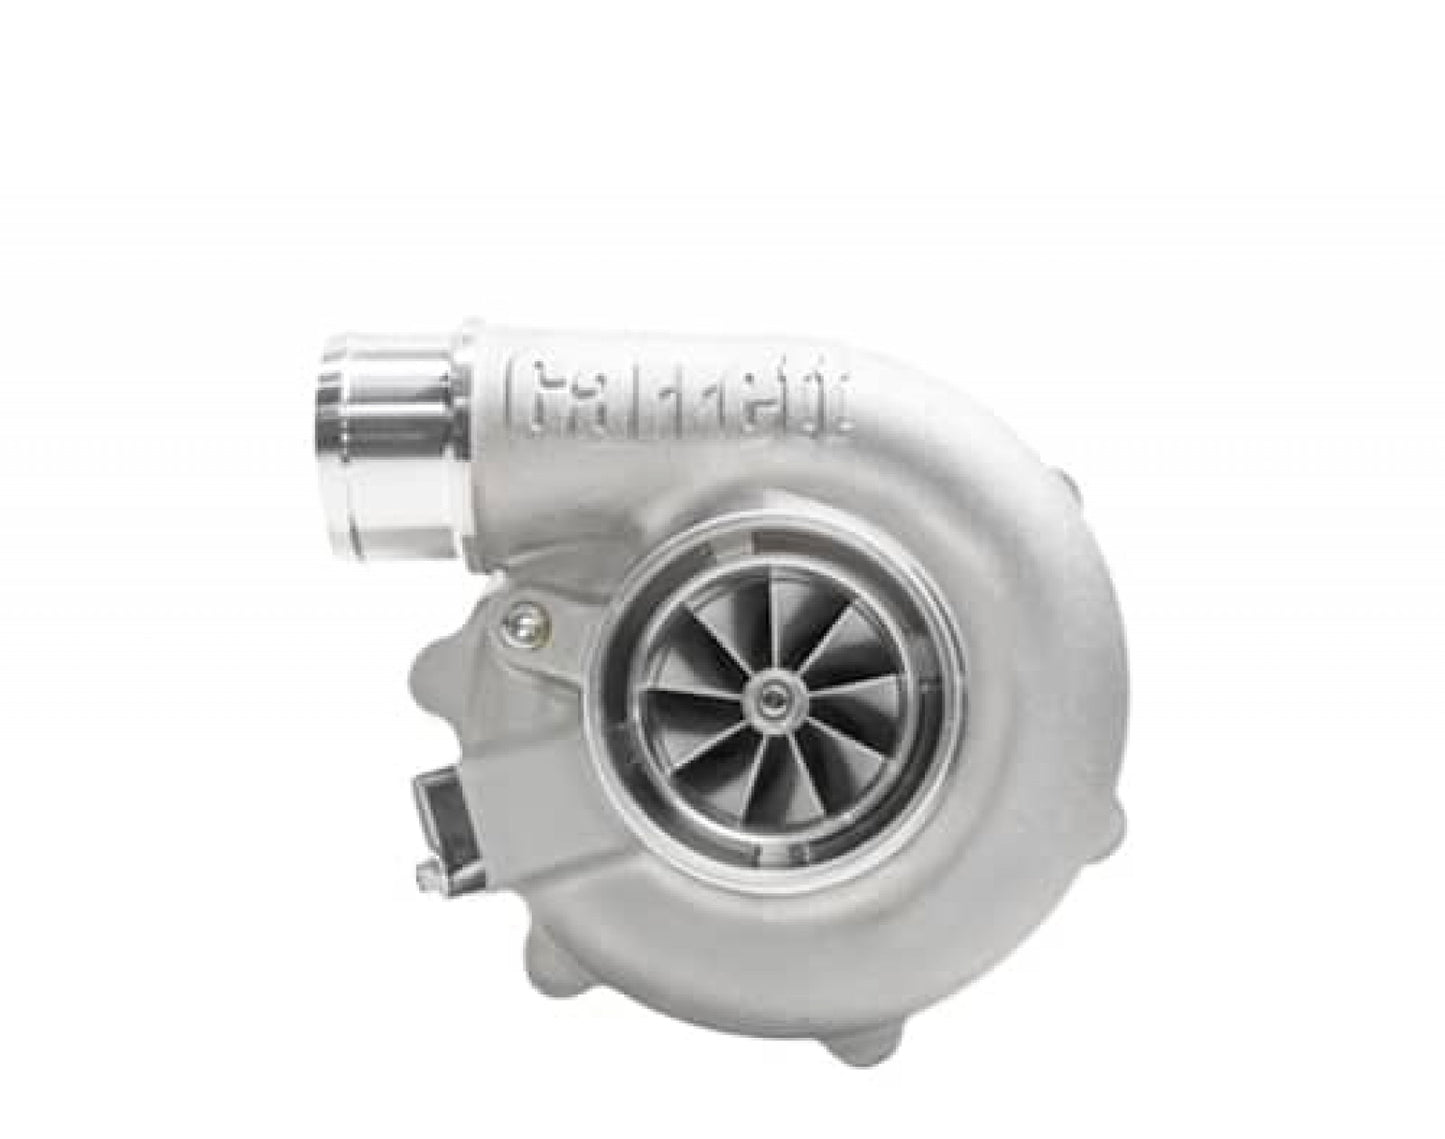 Garret G25-660 RR Turbocharger Div T4 / V-Band 0.92 A/R Int WG